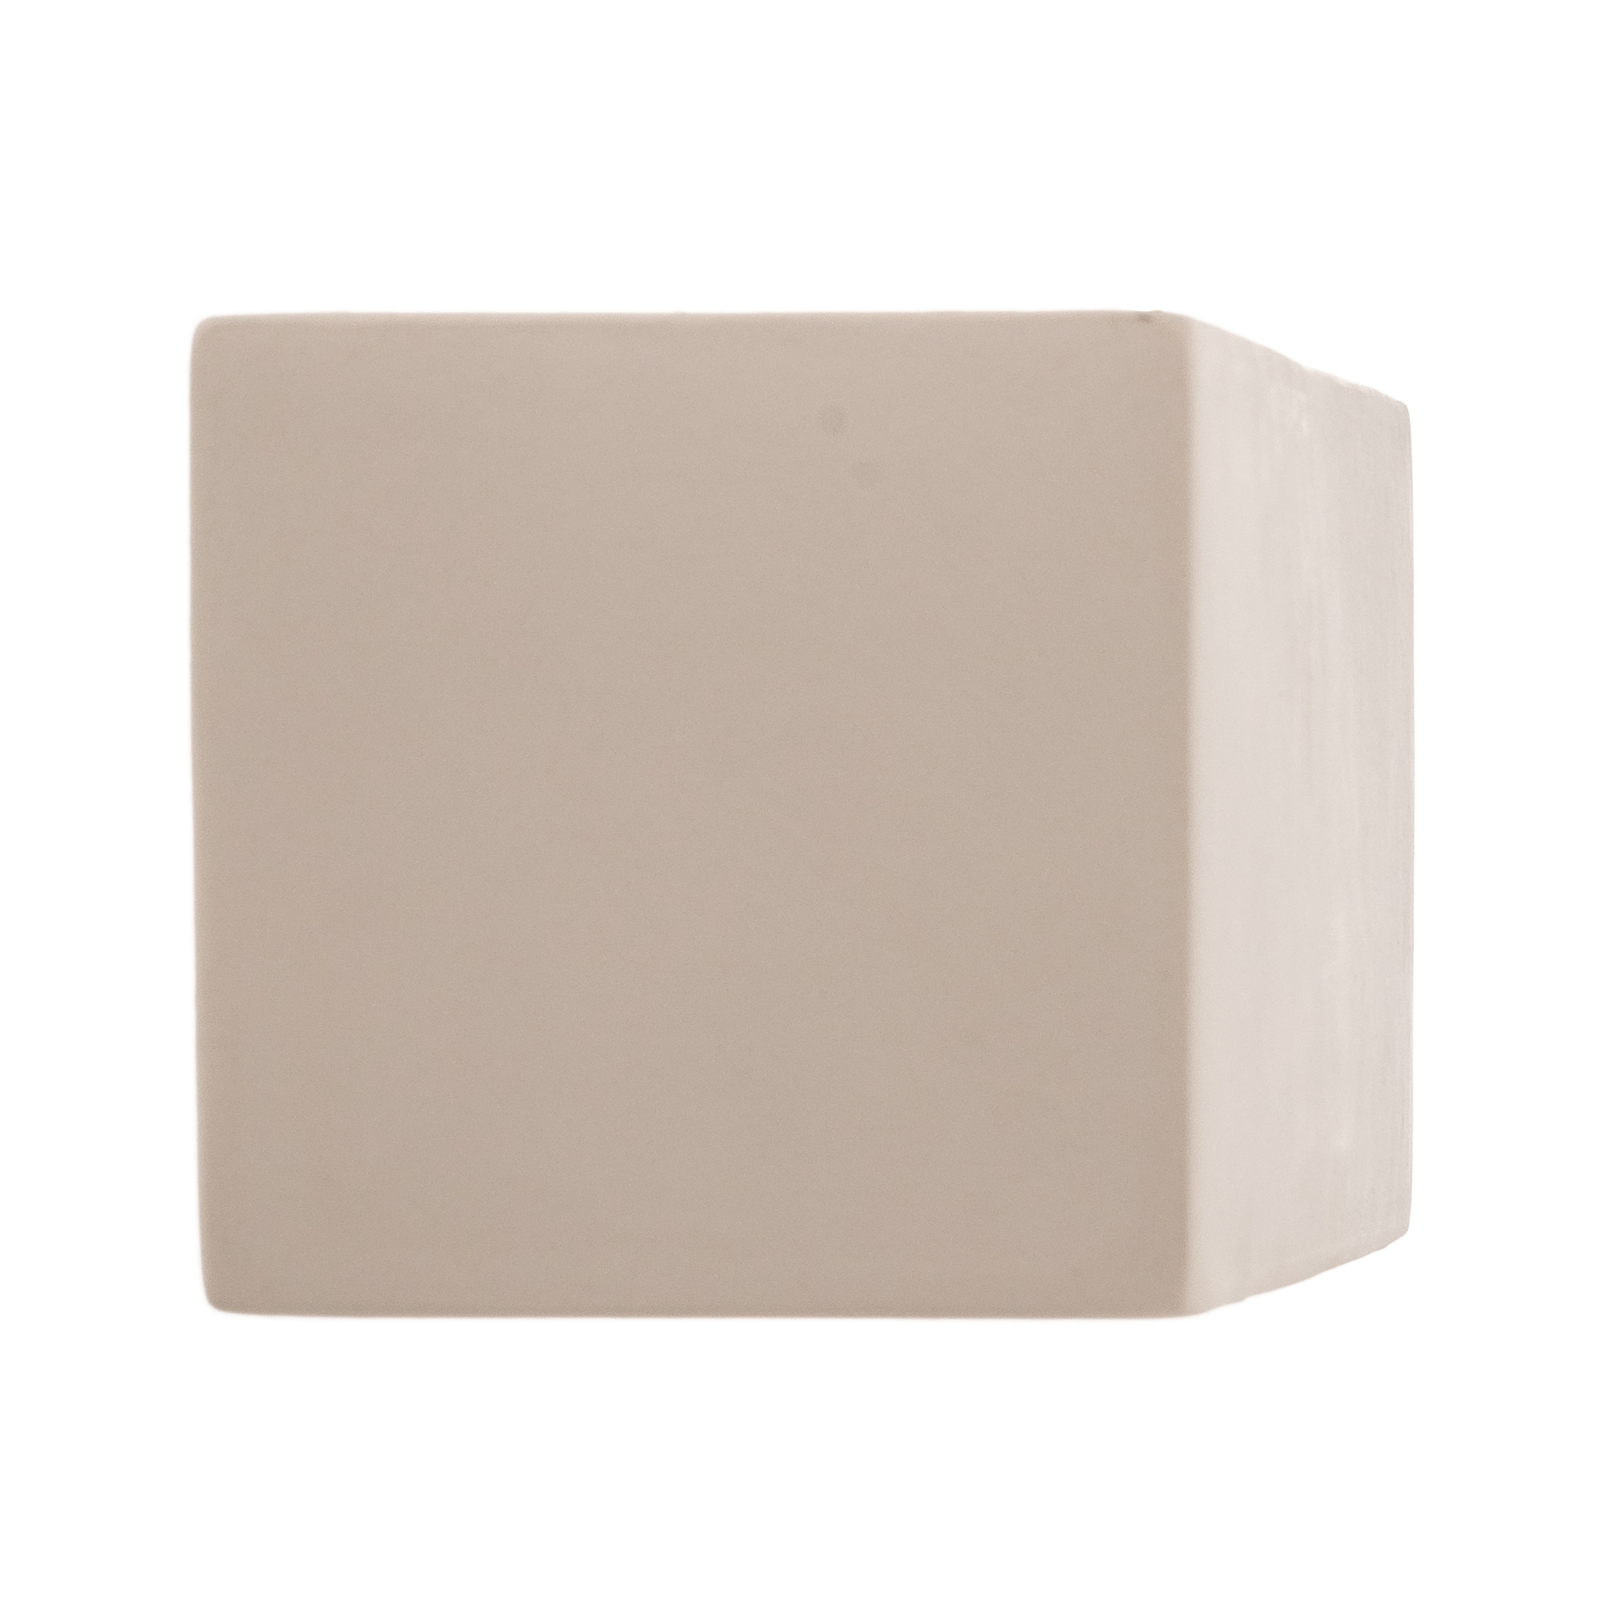 Nástěnné světlo Cube Line up/down z keramiky, bílá